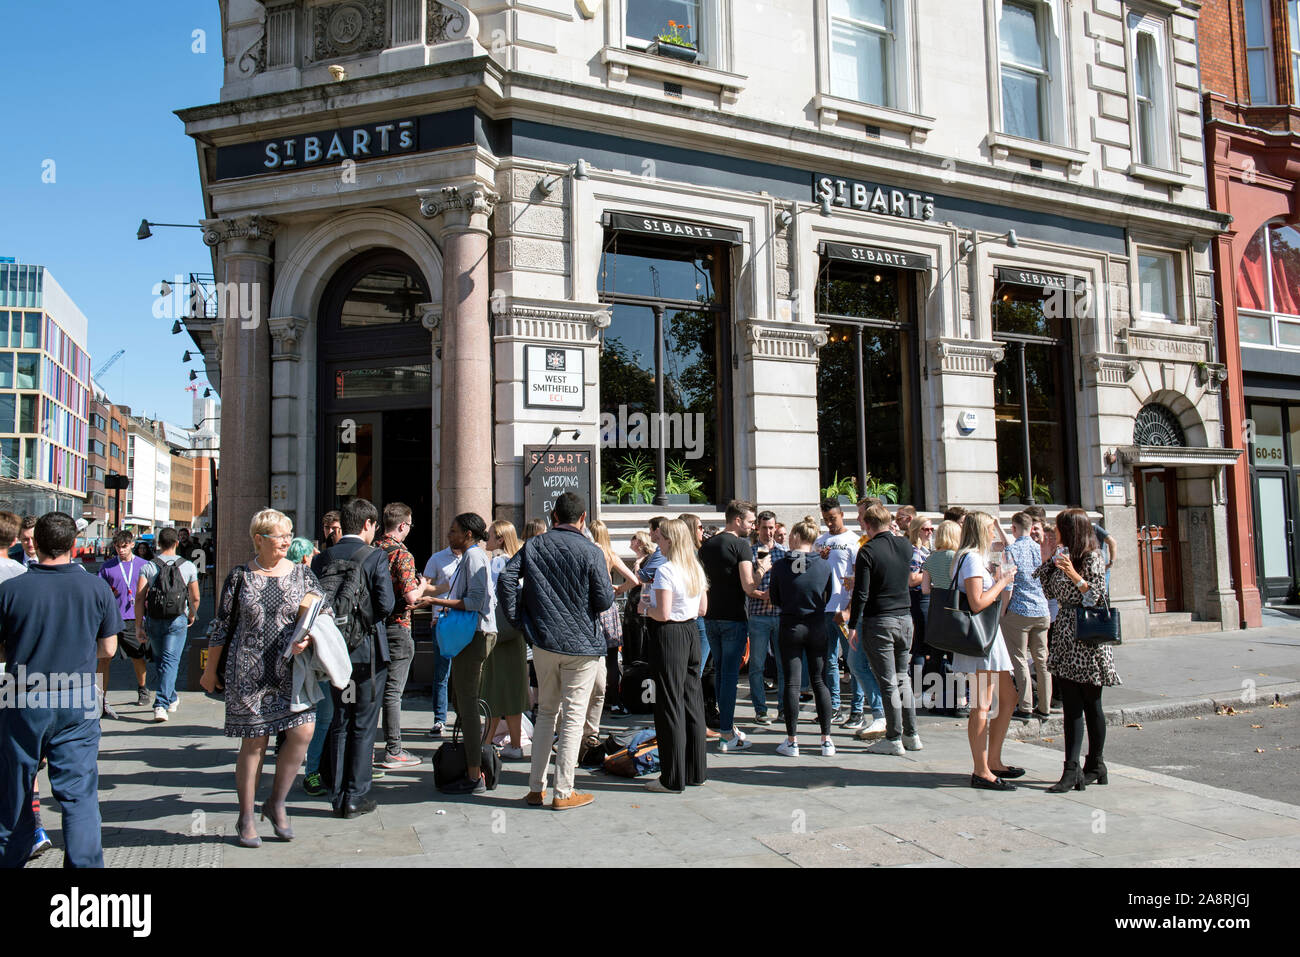 Las personas que beben fuera de St Bart's public house, pub o bar, West Smithfield, la ciudad de Londres. Foto de stock